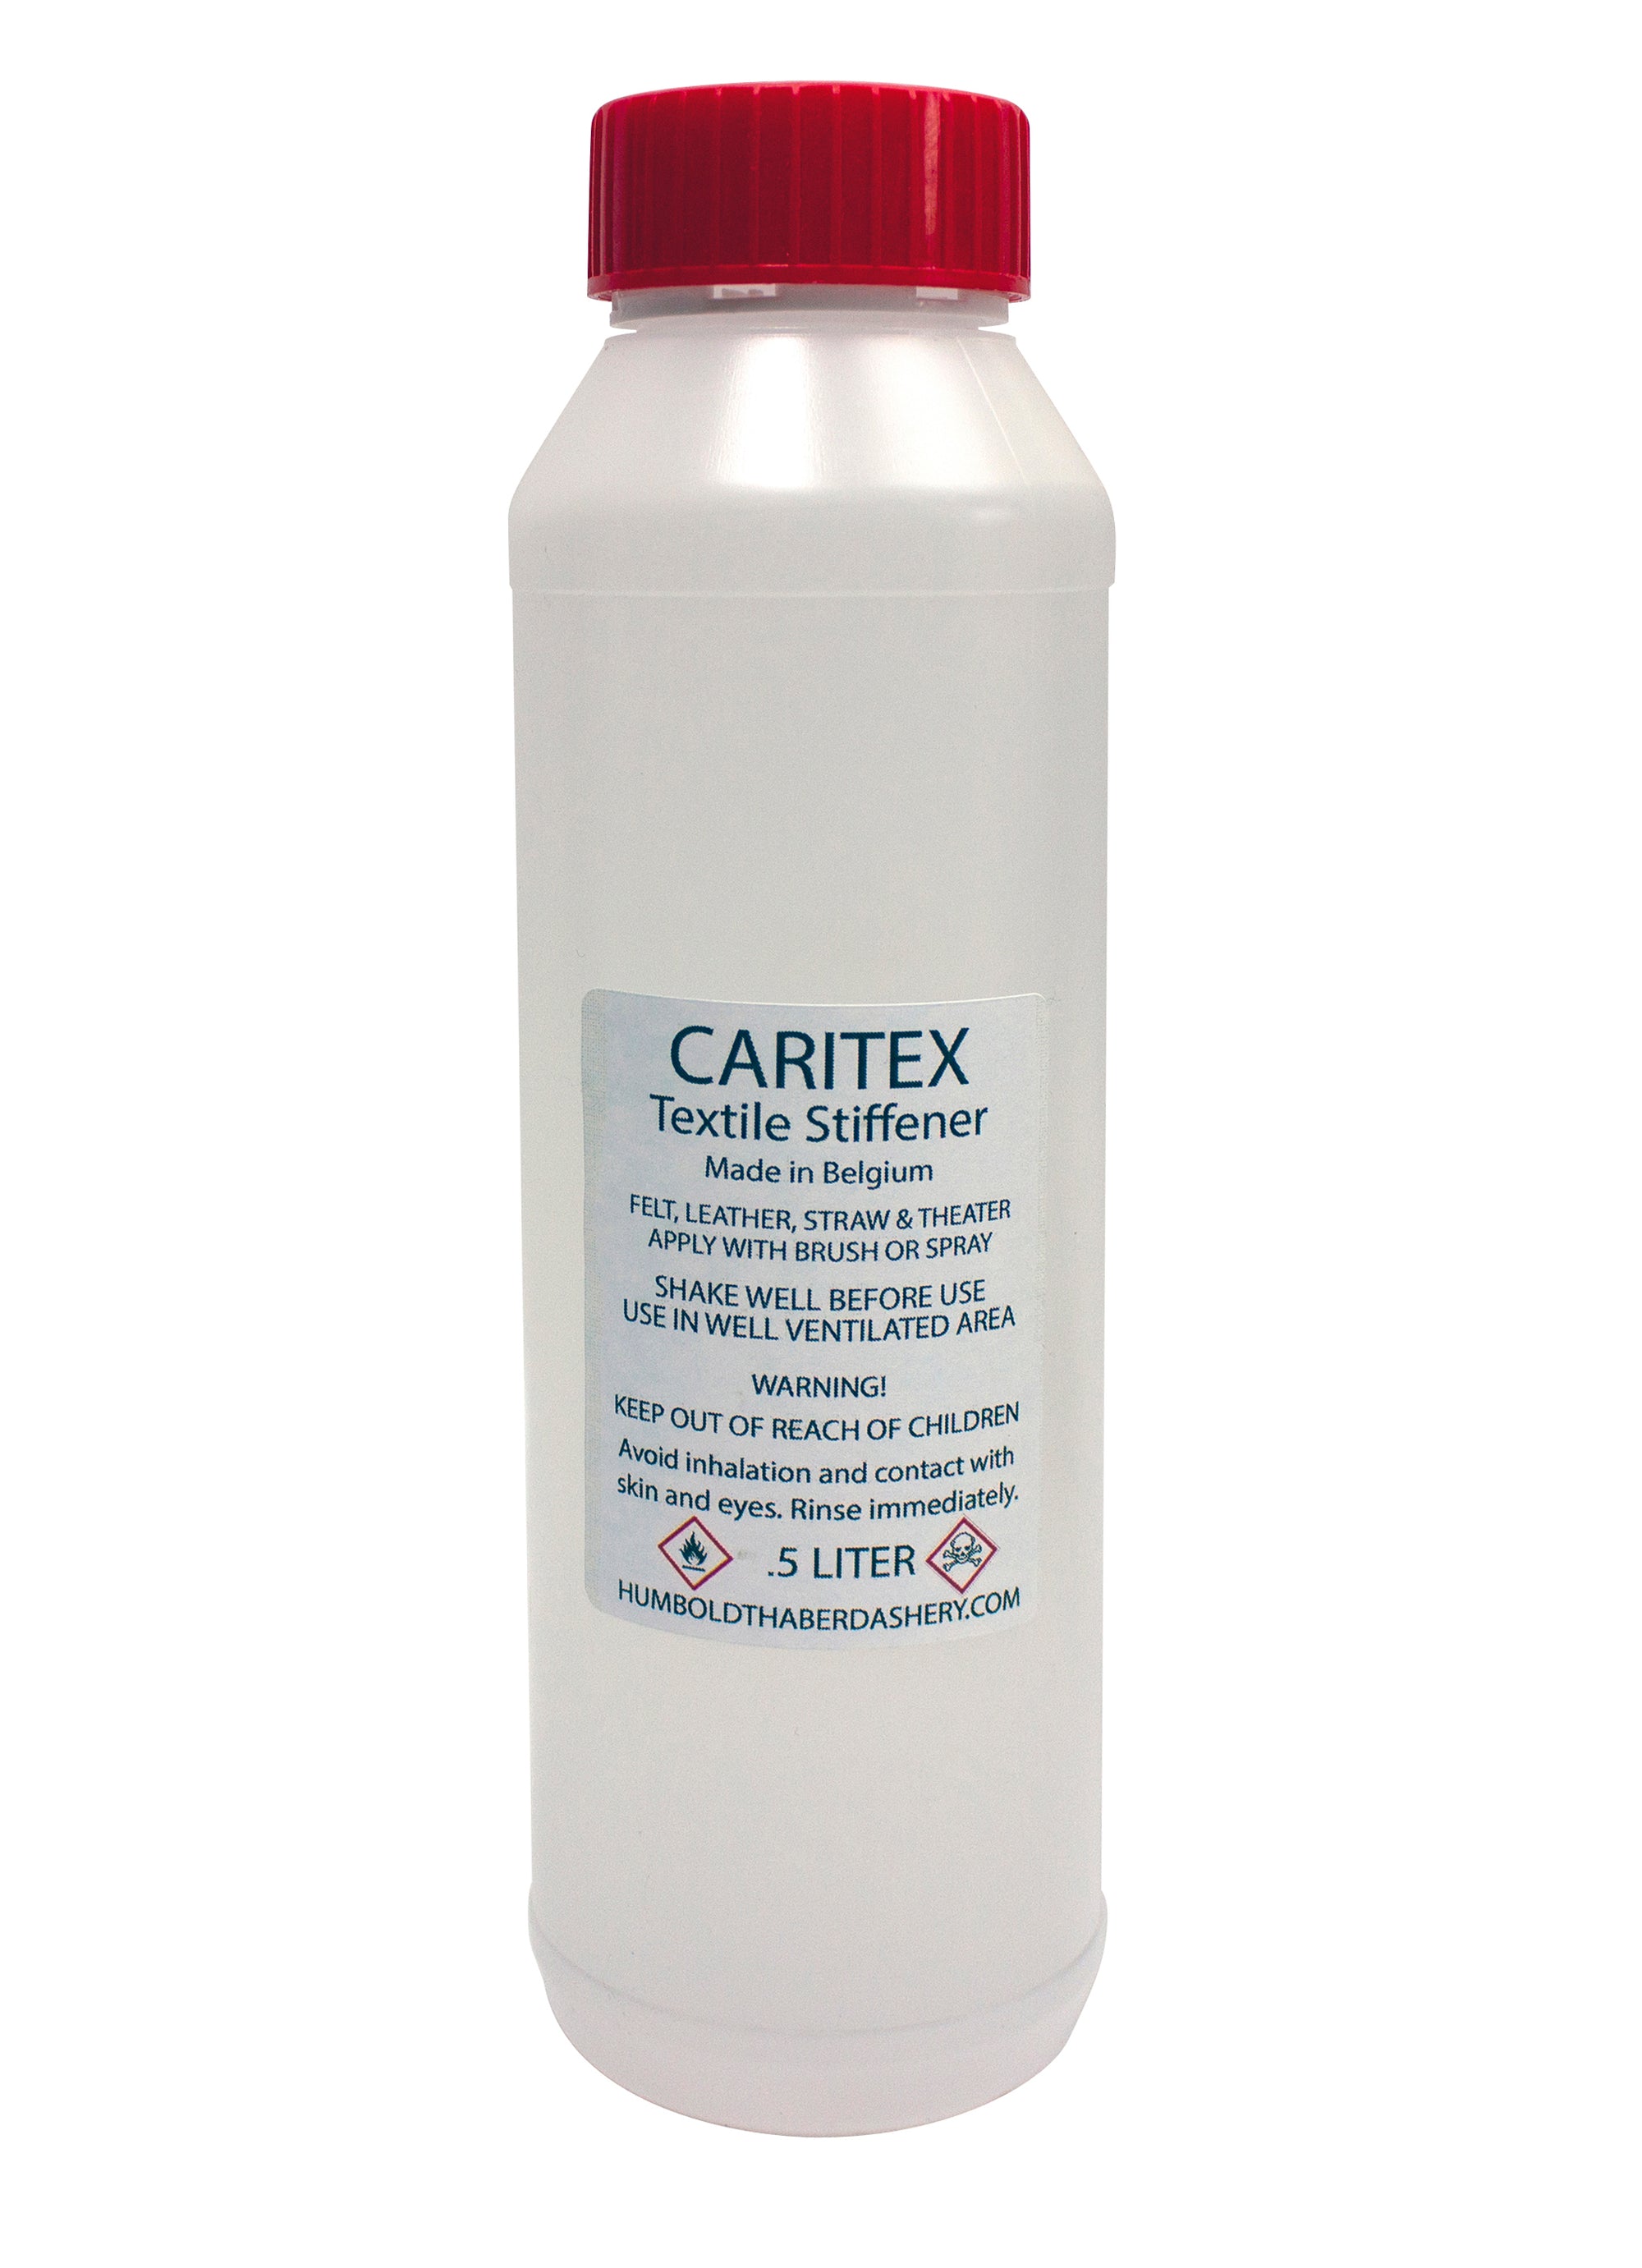 Caritex Textile Stiffener